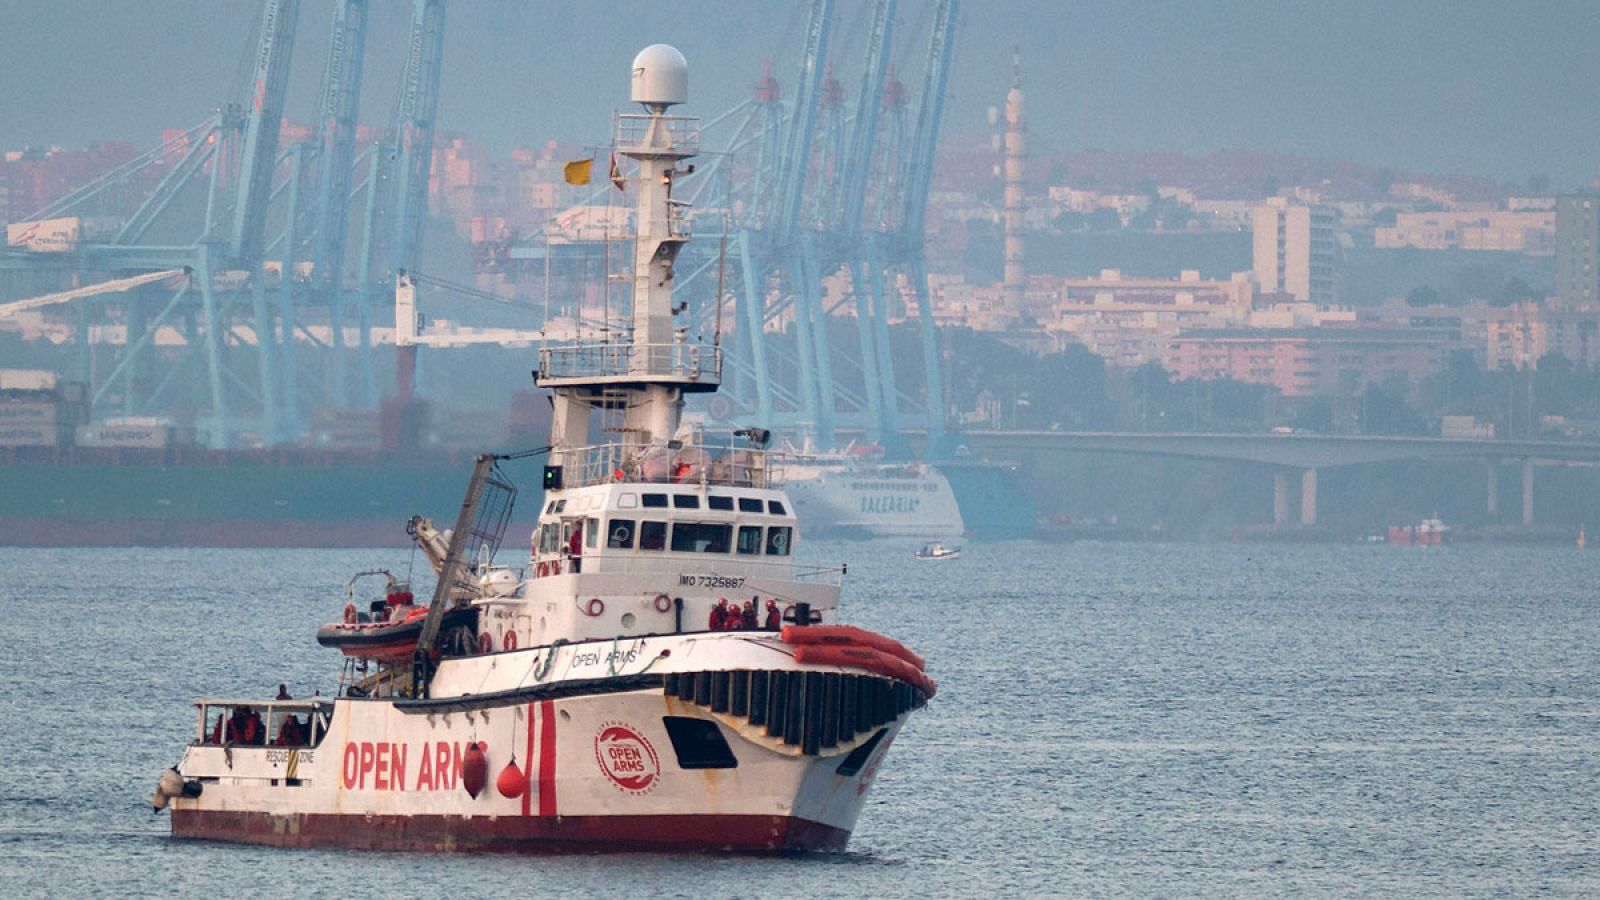 A bordo del Open Arms: El Open Arms rescata a 39 personas más en el Mediterráneo